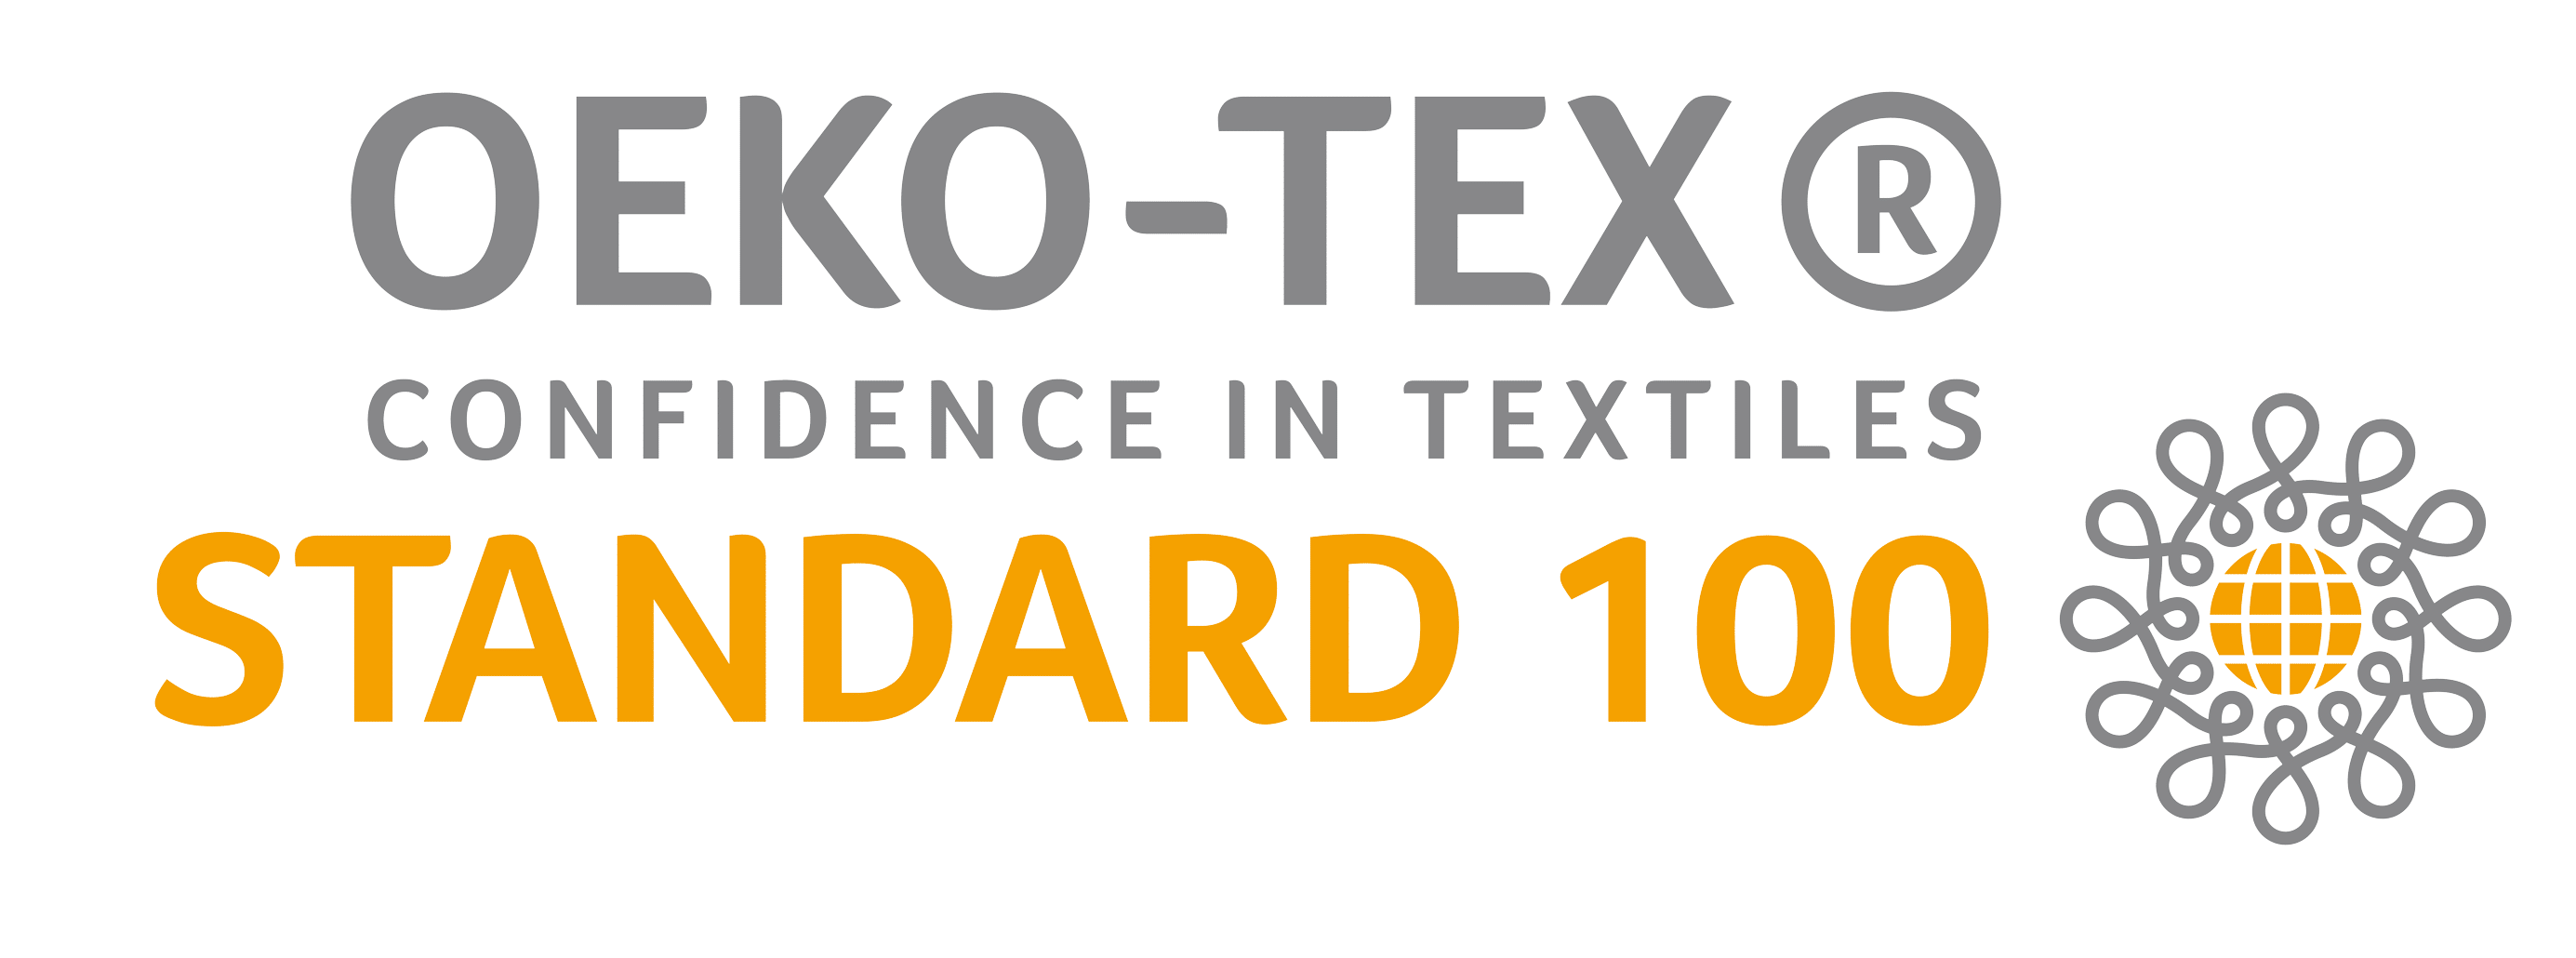 oeko-tex standard 100 twin mattress